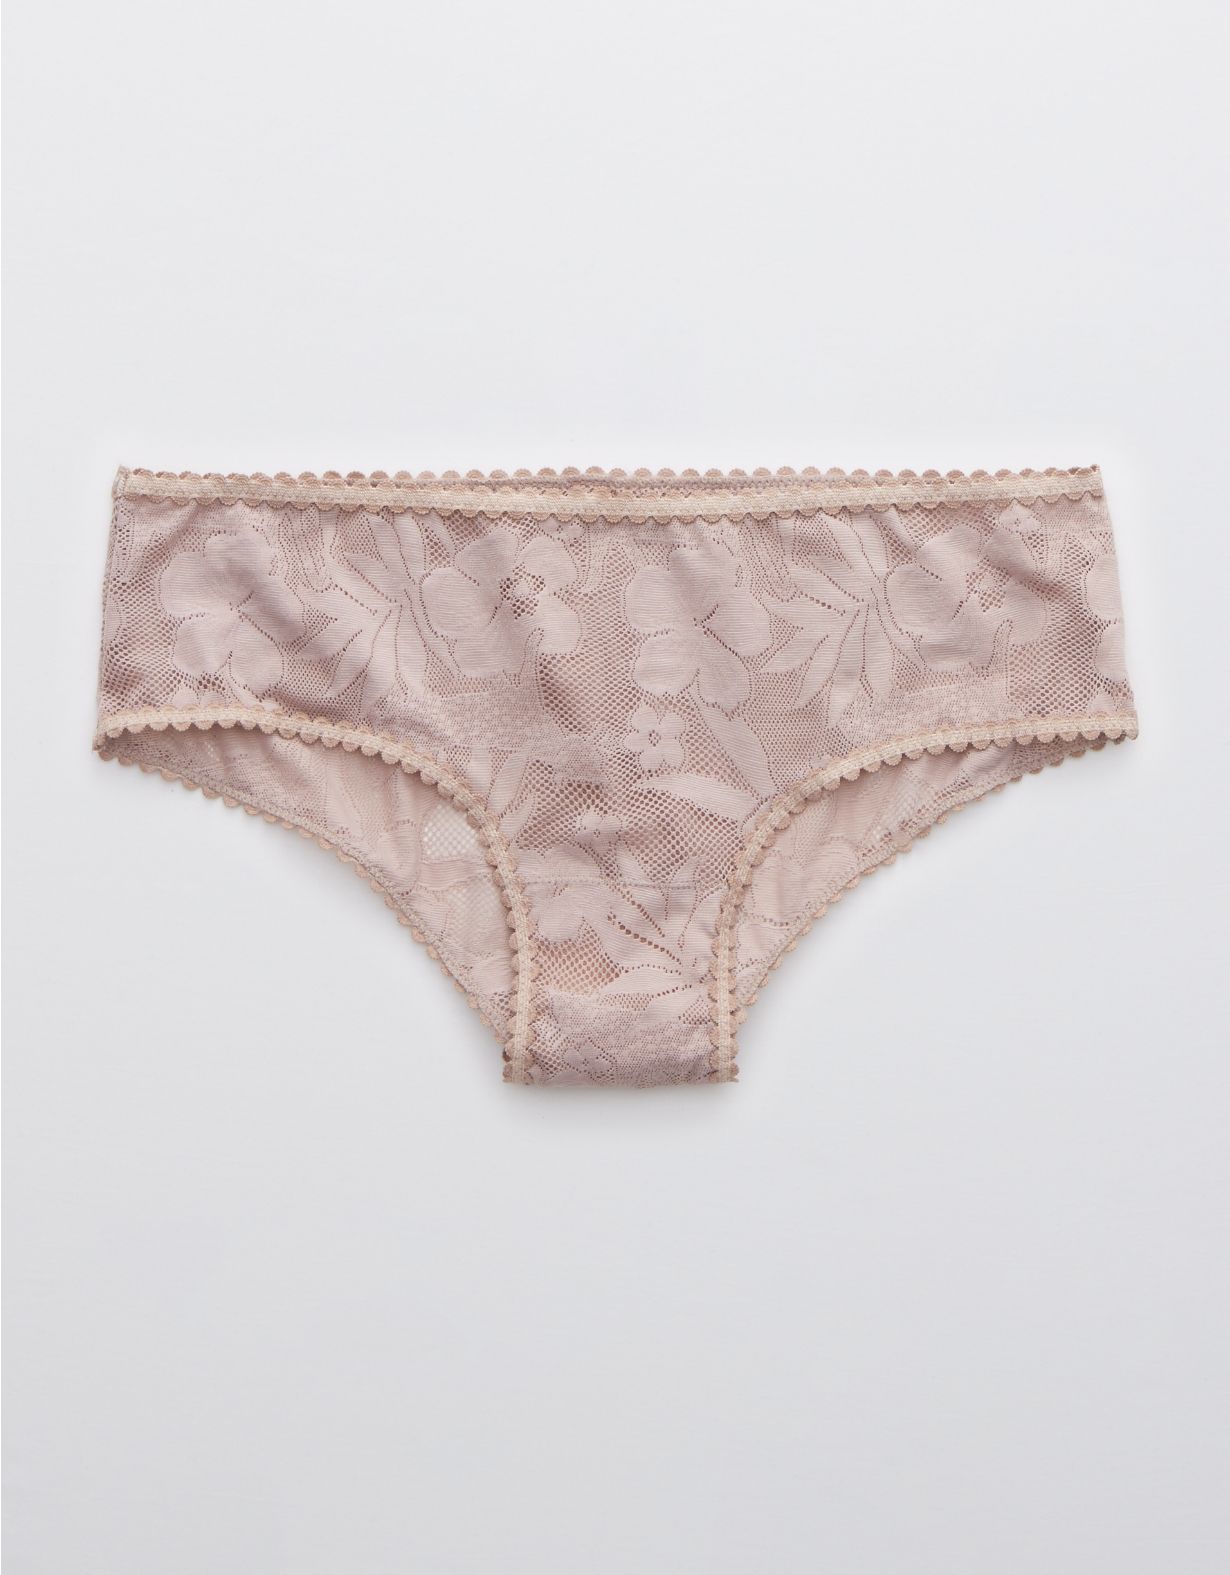 Aerie Cheetah Lace Cheeky Underwear